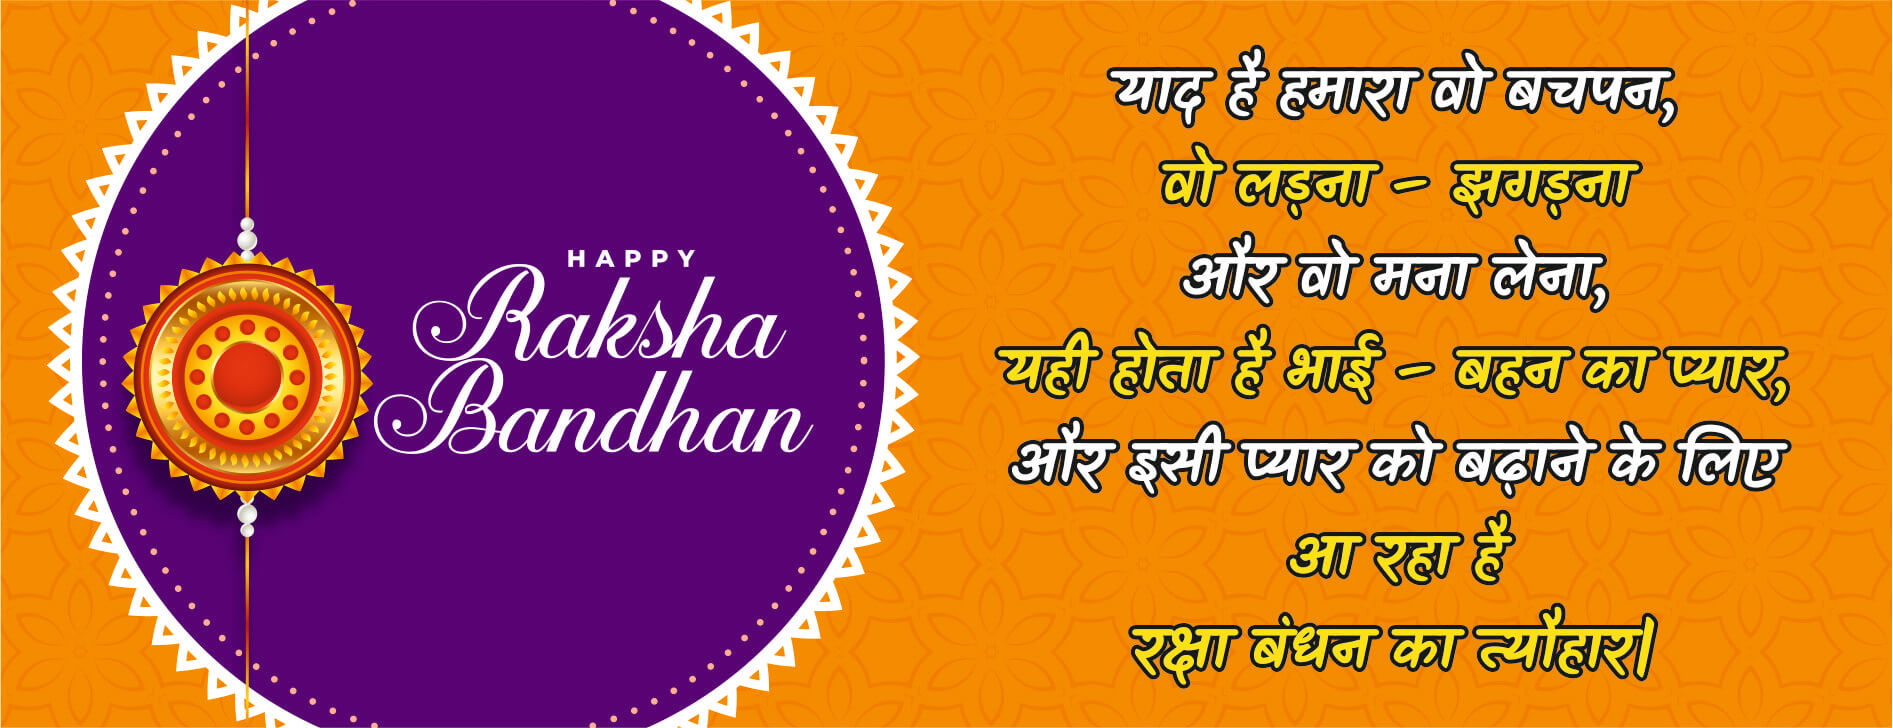 raksha bandhan inspirational quotes in hindi